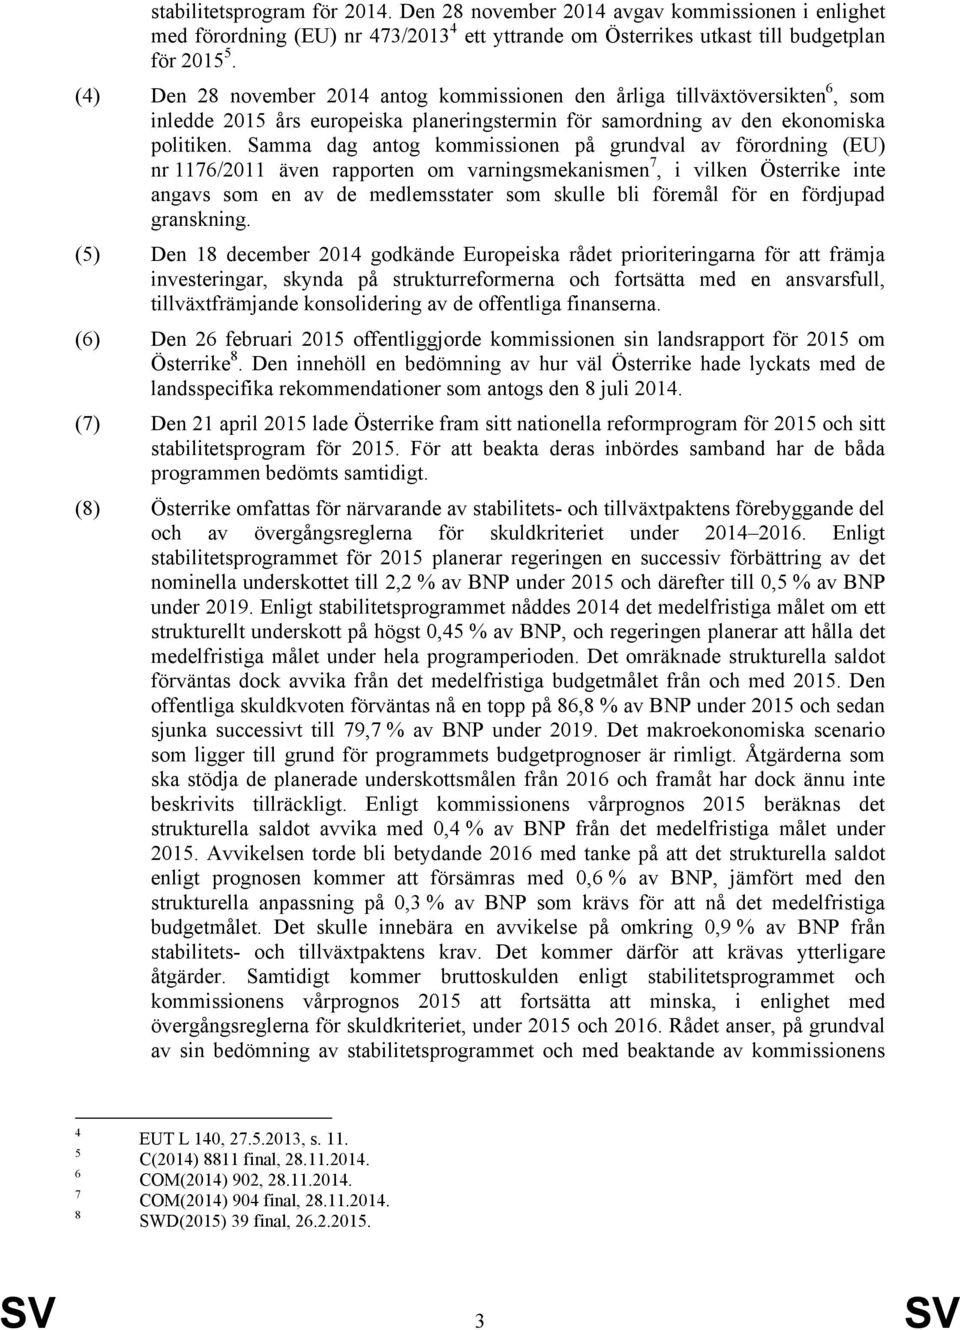 Samma dag antog kommissionen på grundval av förordning (EU) nr 1176/2011 även rapporten om varningsmekanismen 7, i vilken Österrike inte angavs som en av de medlemsstater som skulle bli föremål för